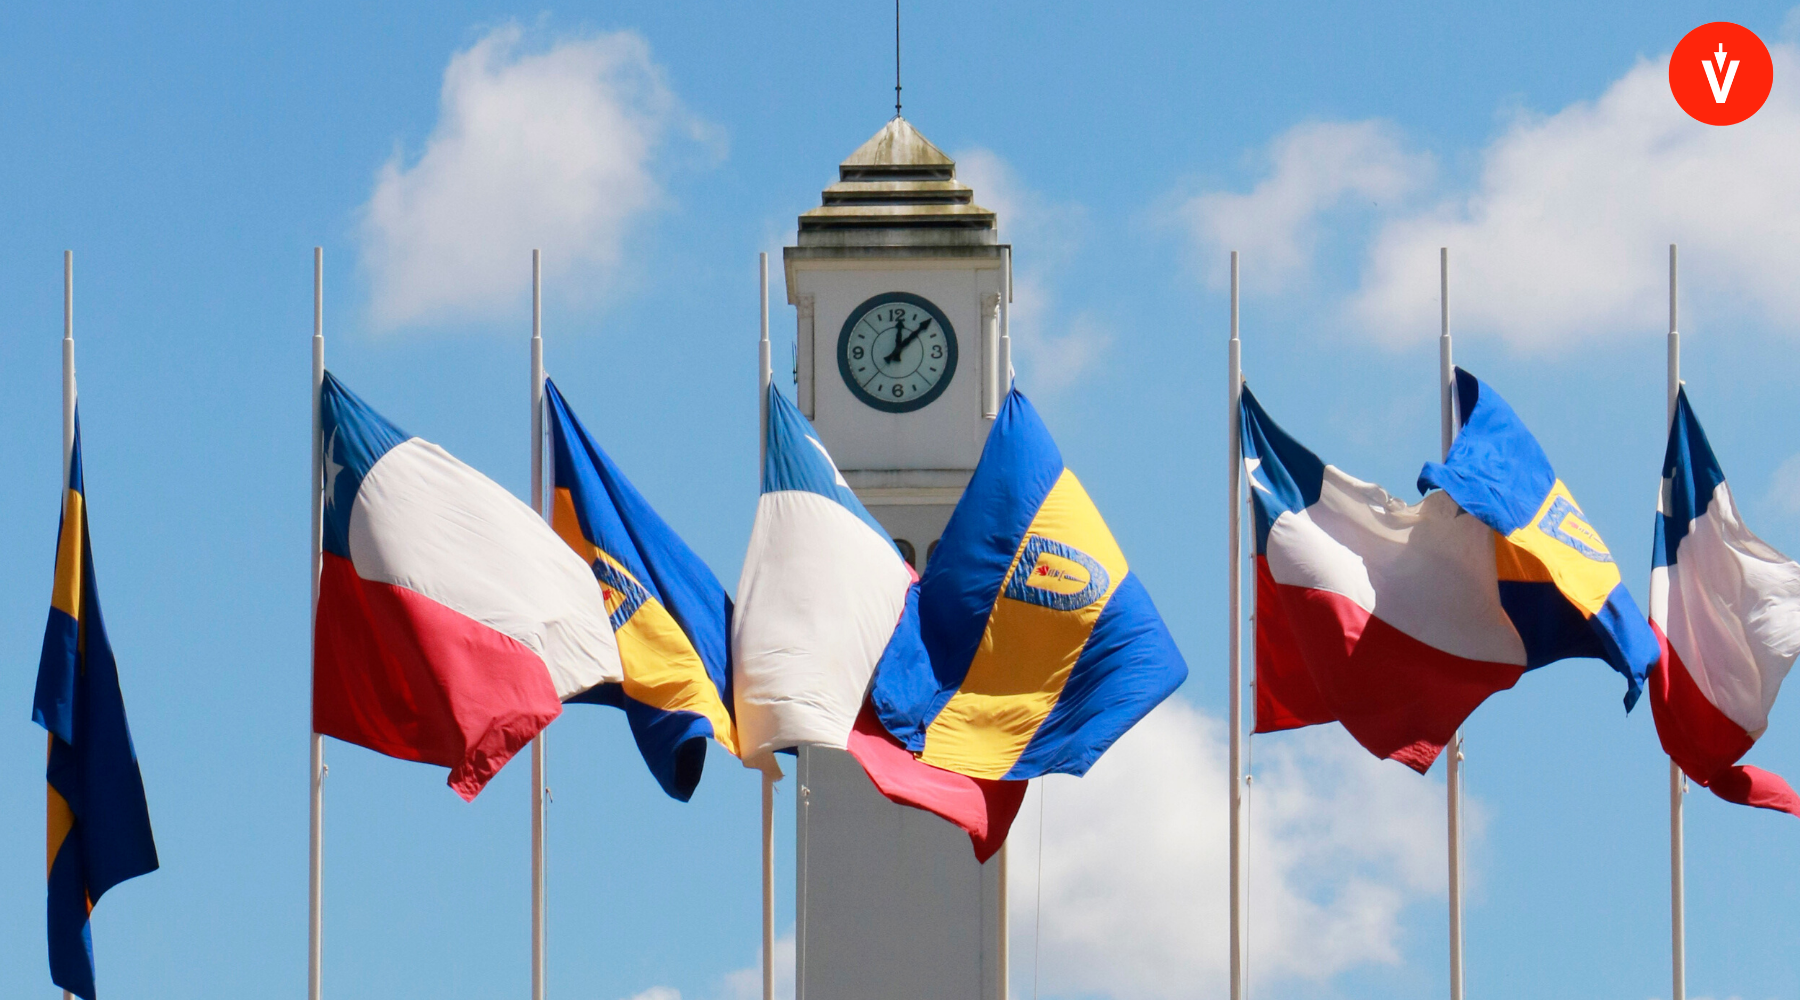 Torre del reloj y banderas de la Universidad de Concepción, Chile, con logo de EVoting en la esquina